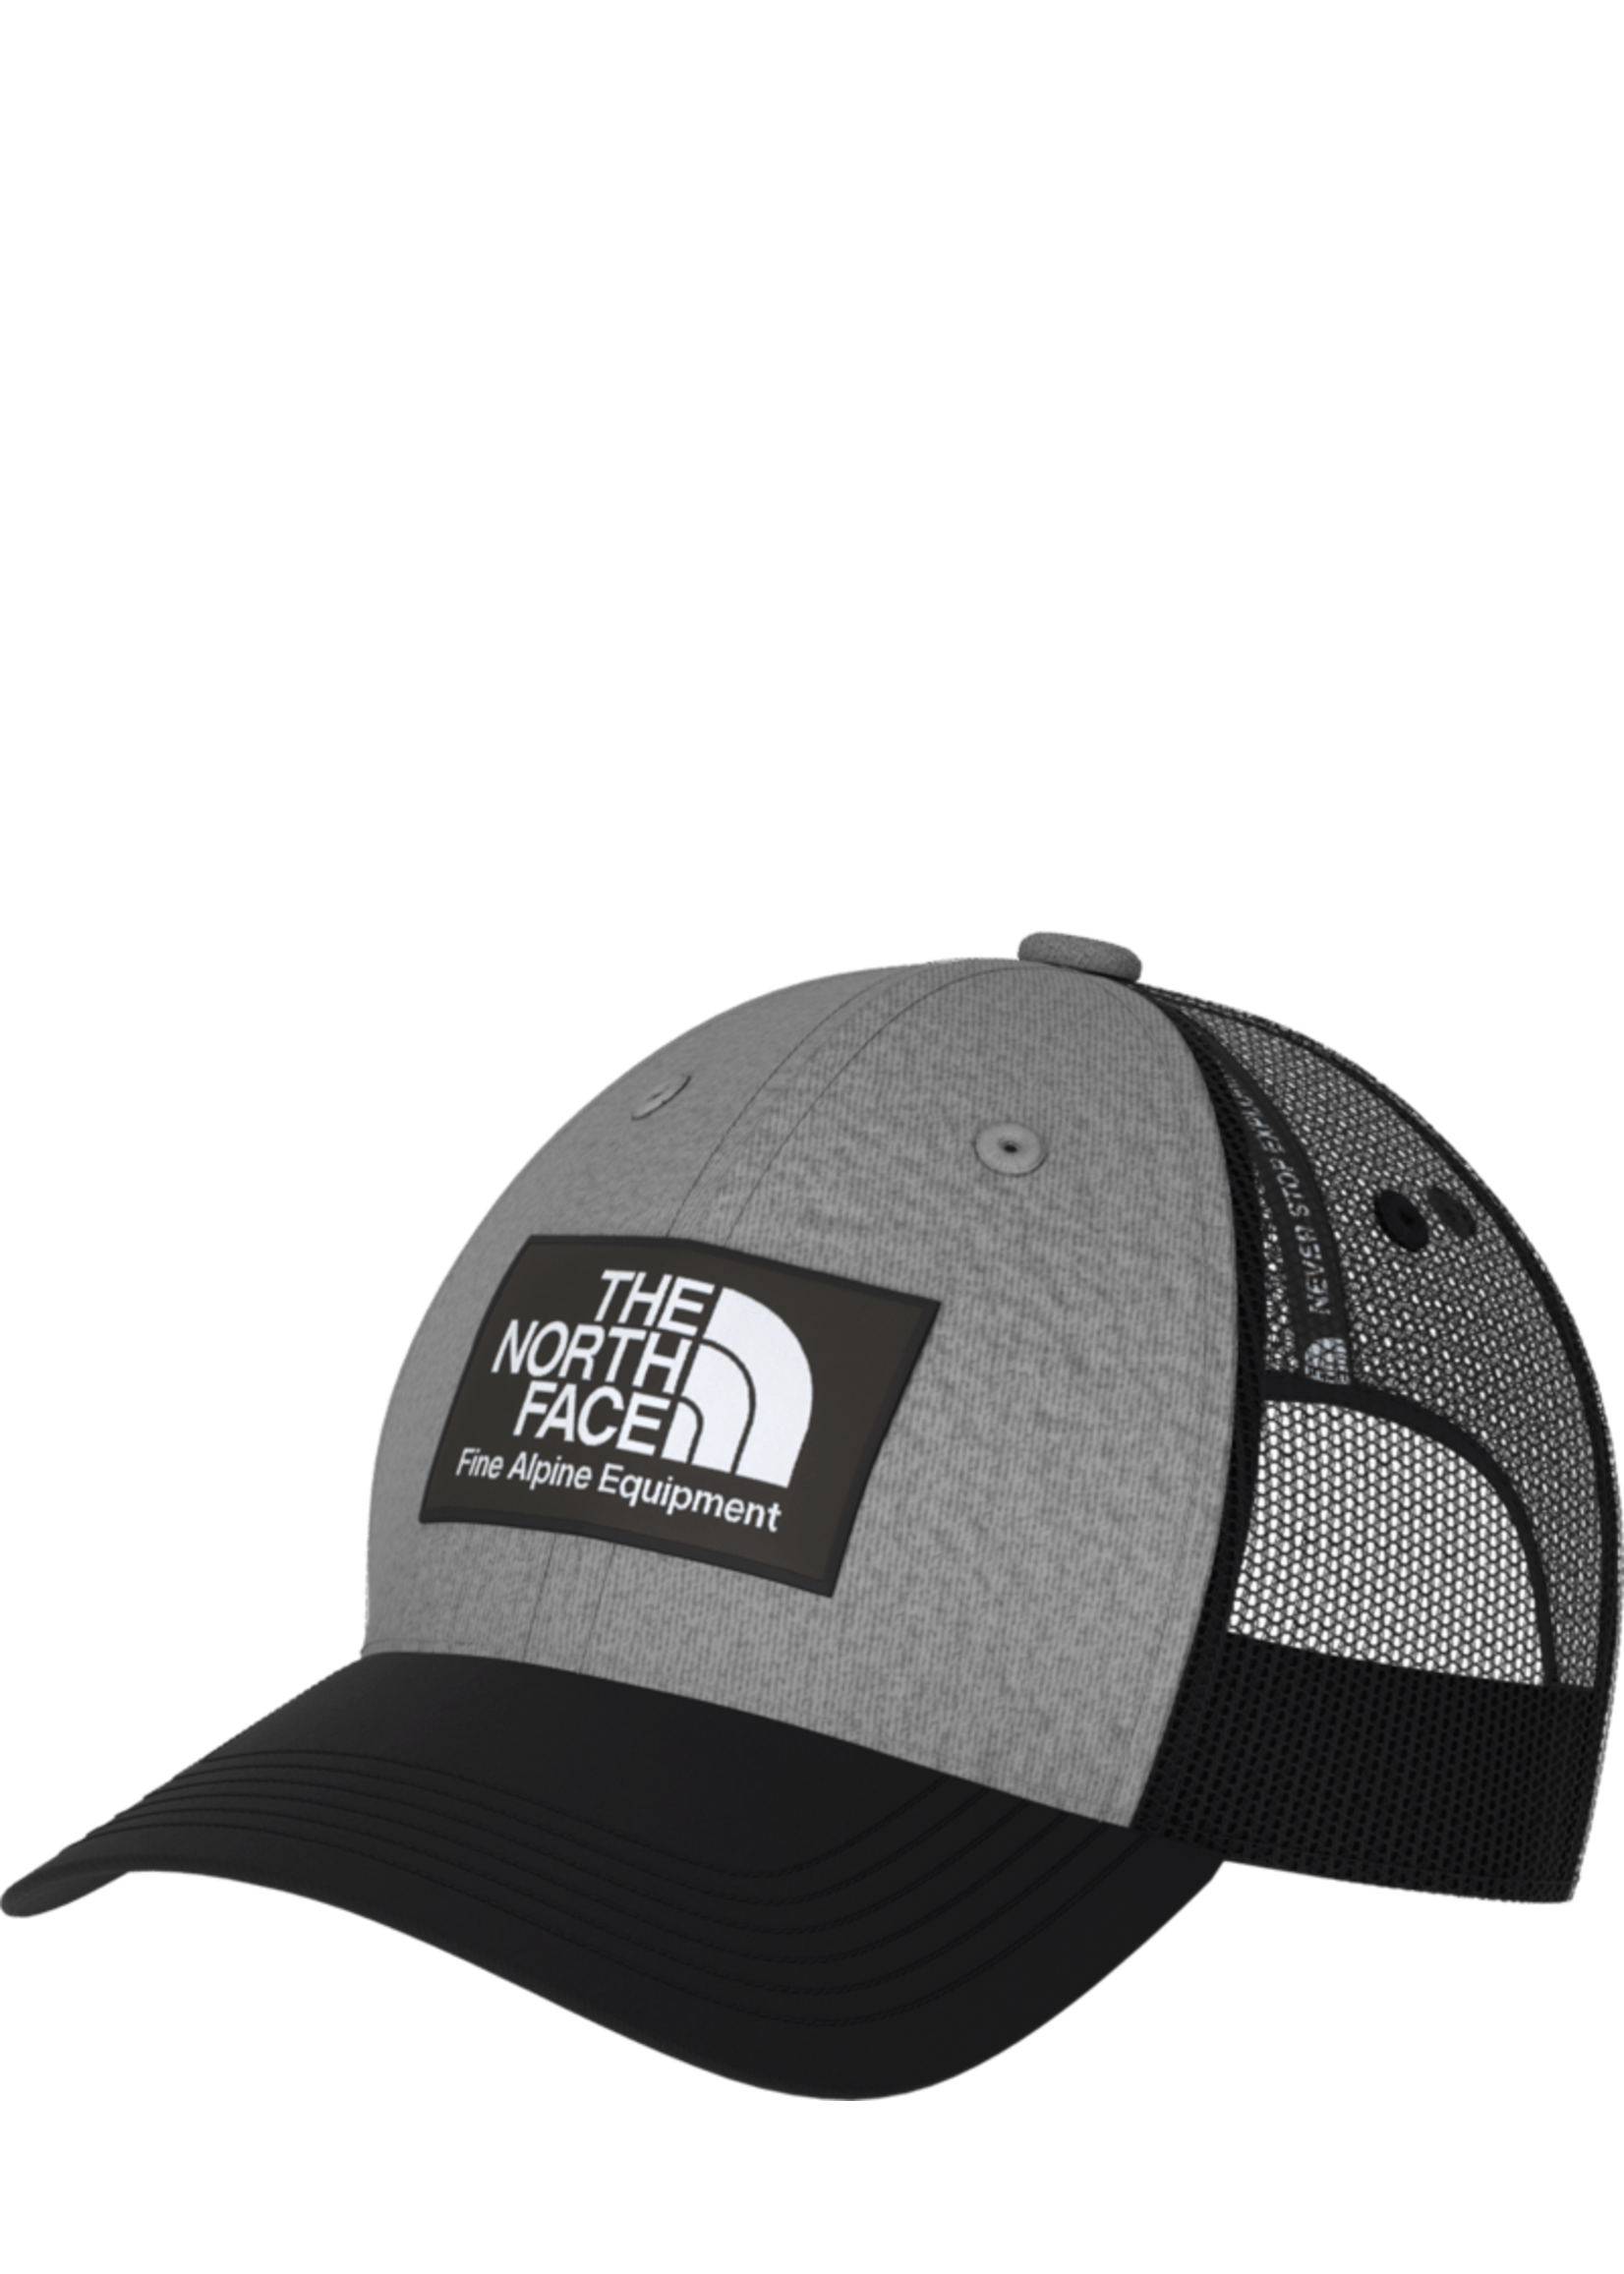 The North Face Mudder Trucker Hat - TNF Black/TNF Medium Grey Heather